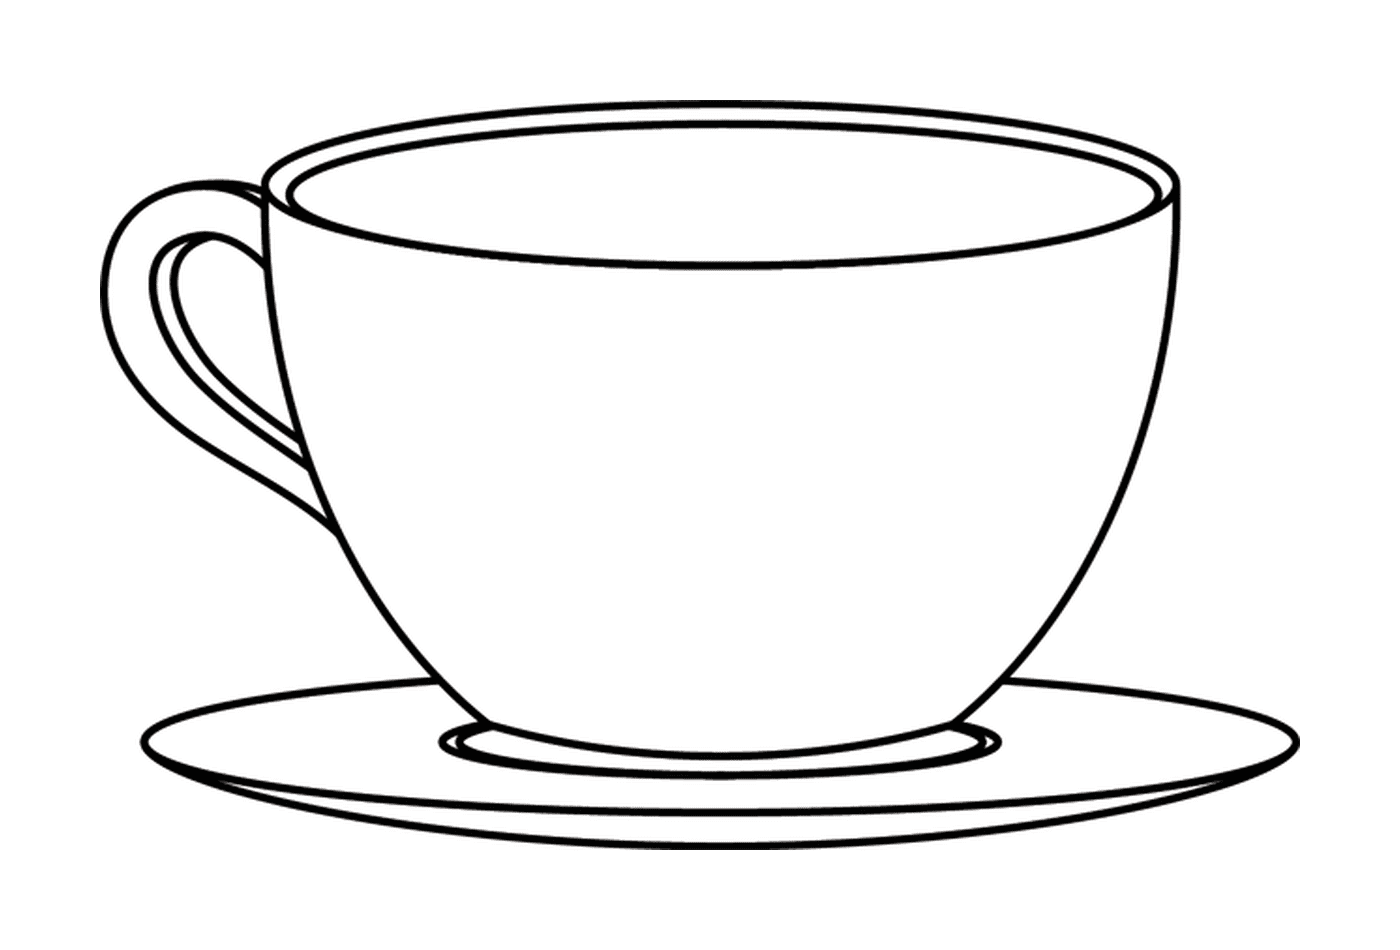  Una tazza di caffè e tè 